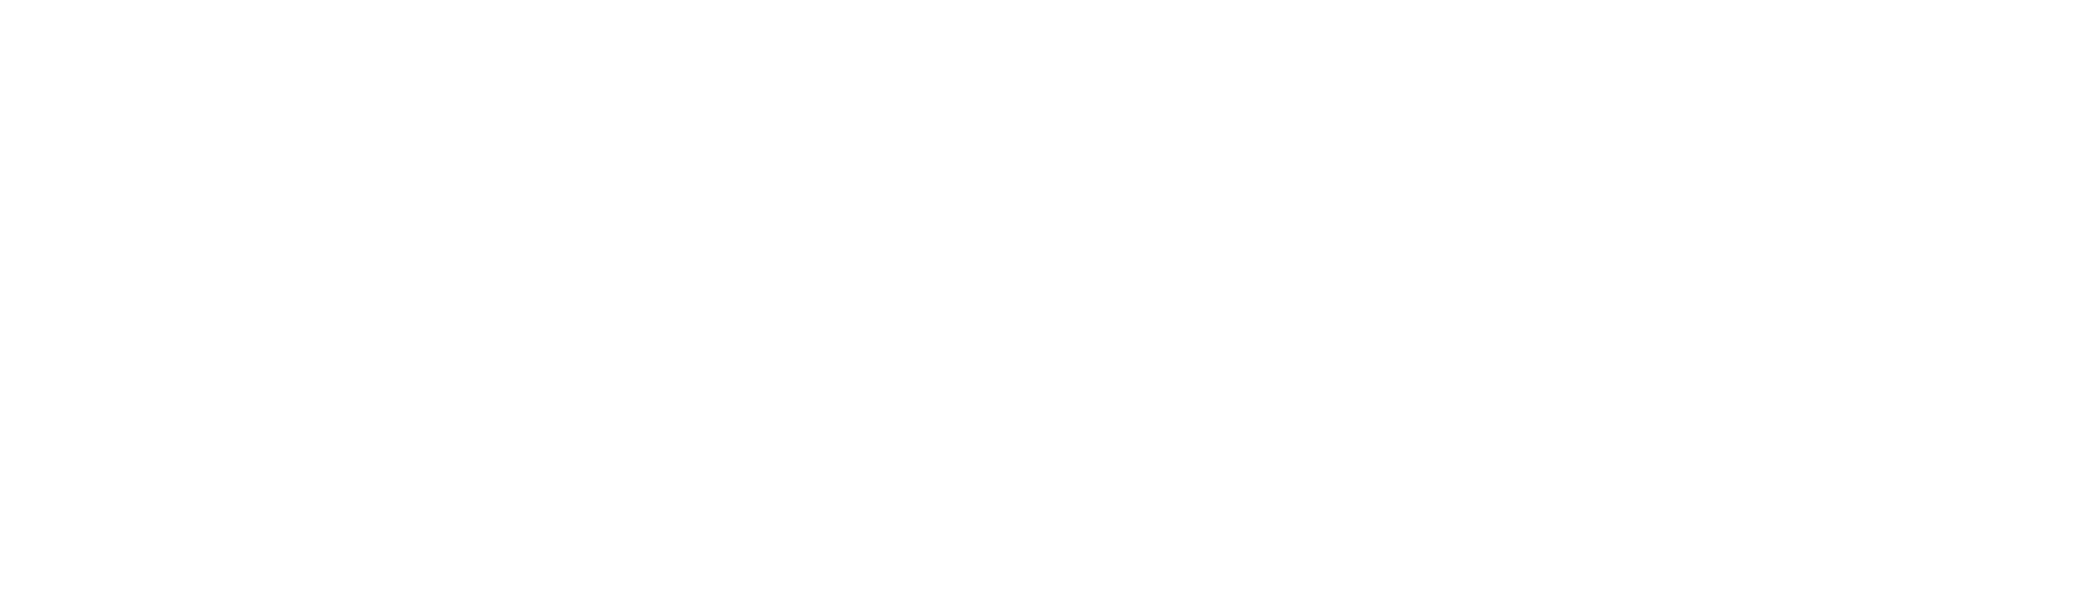 Orozco Transportes y Excavaciones